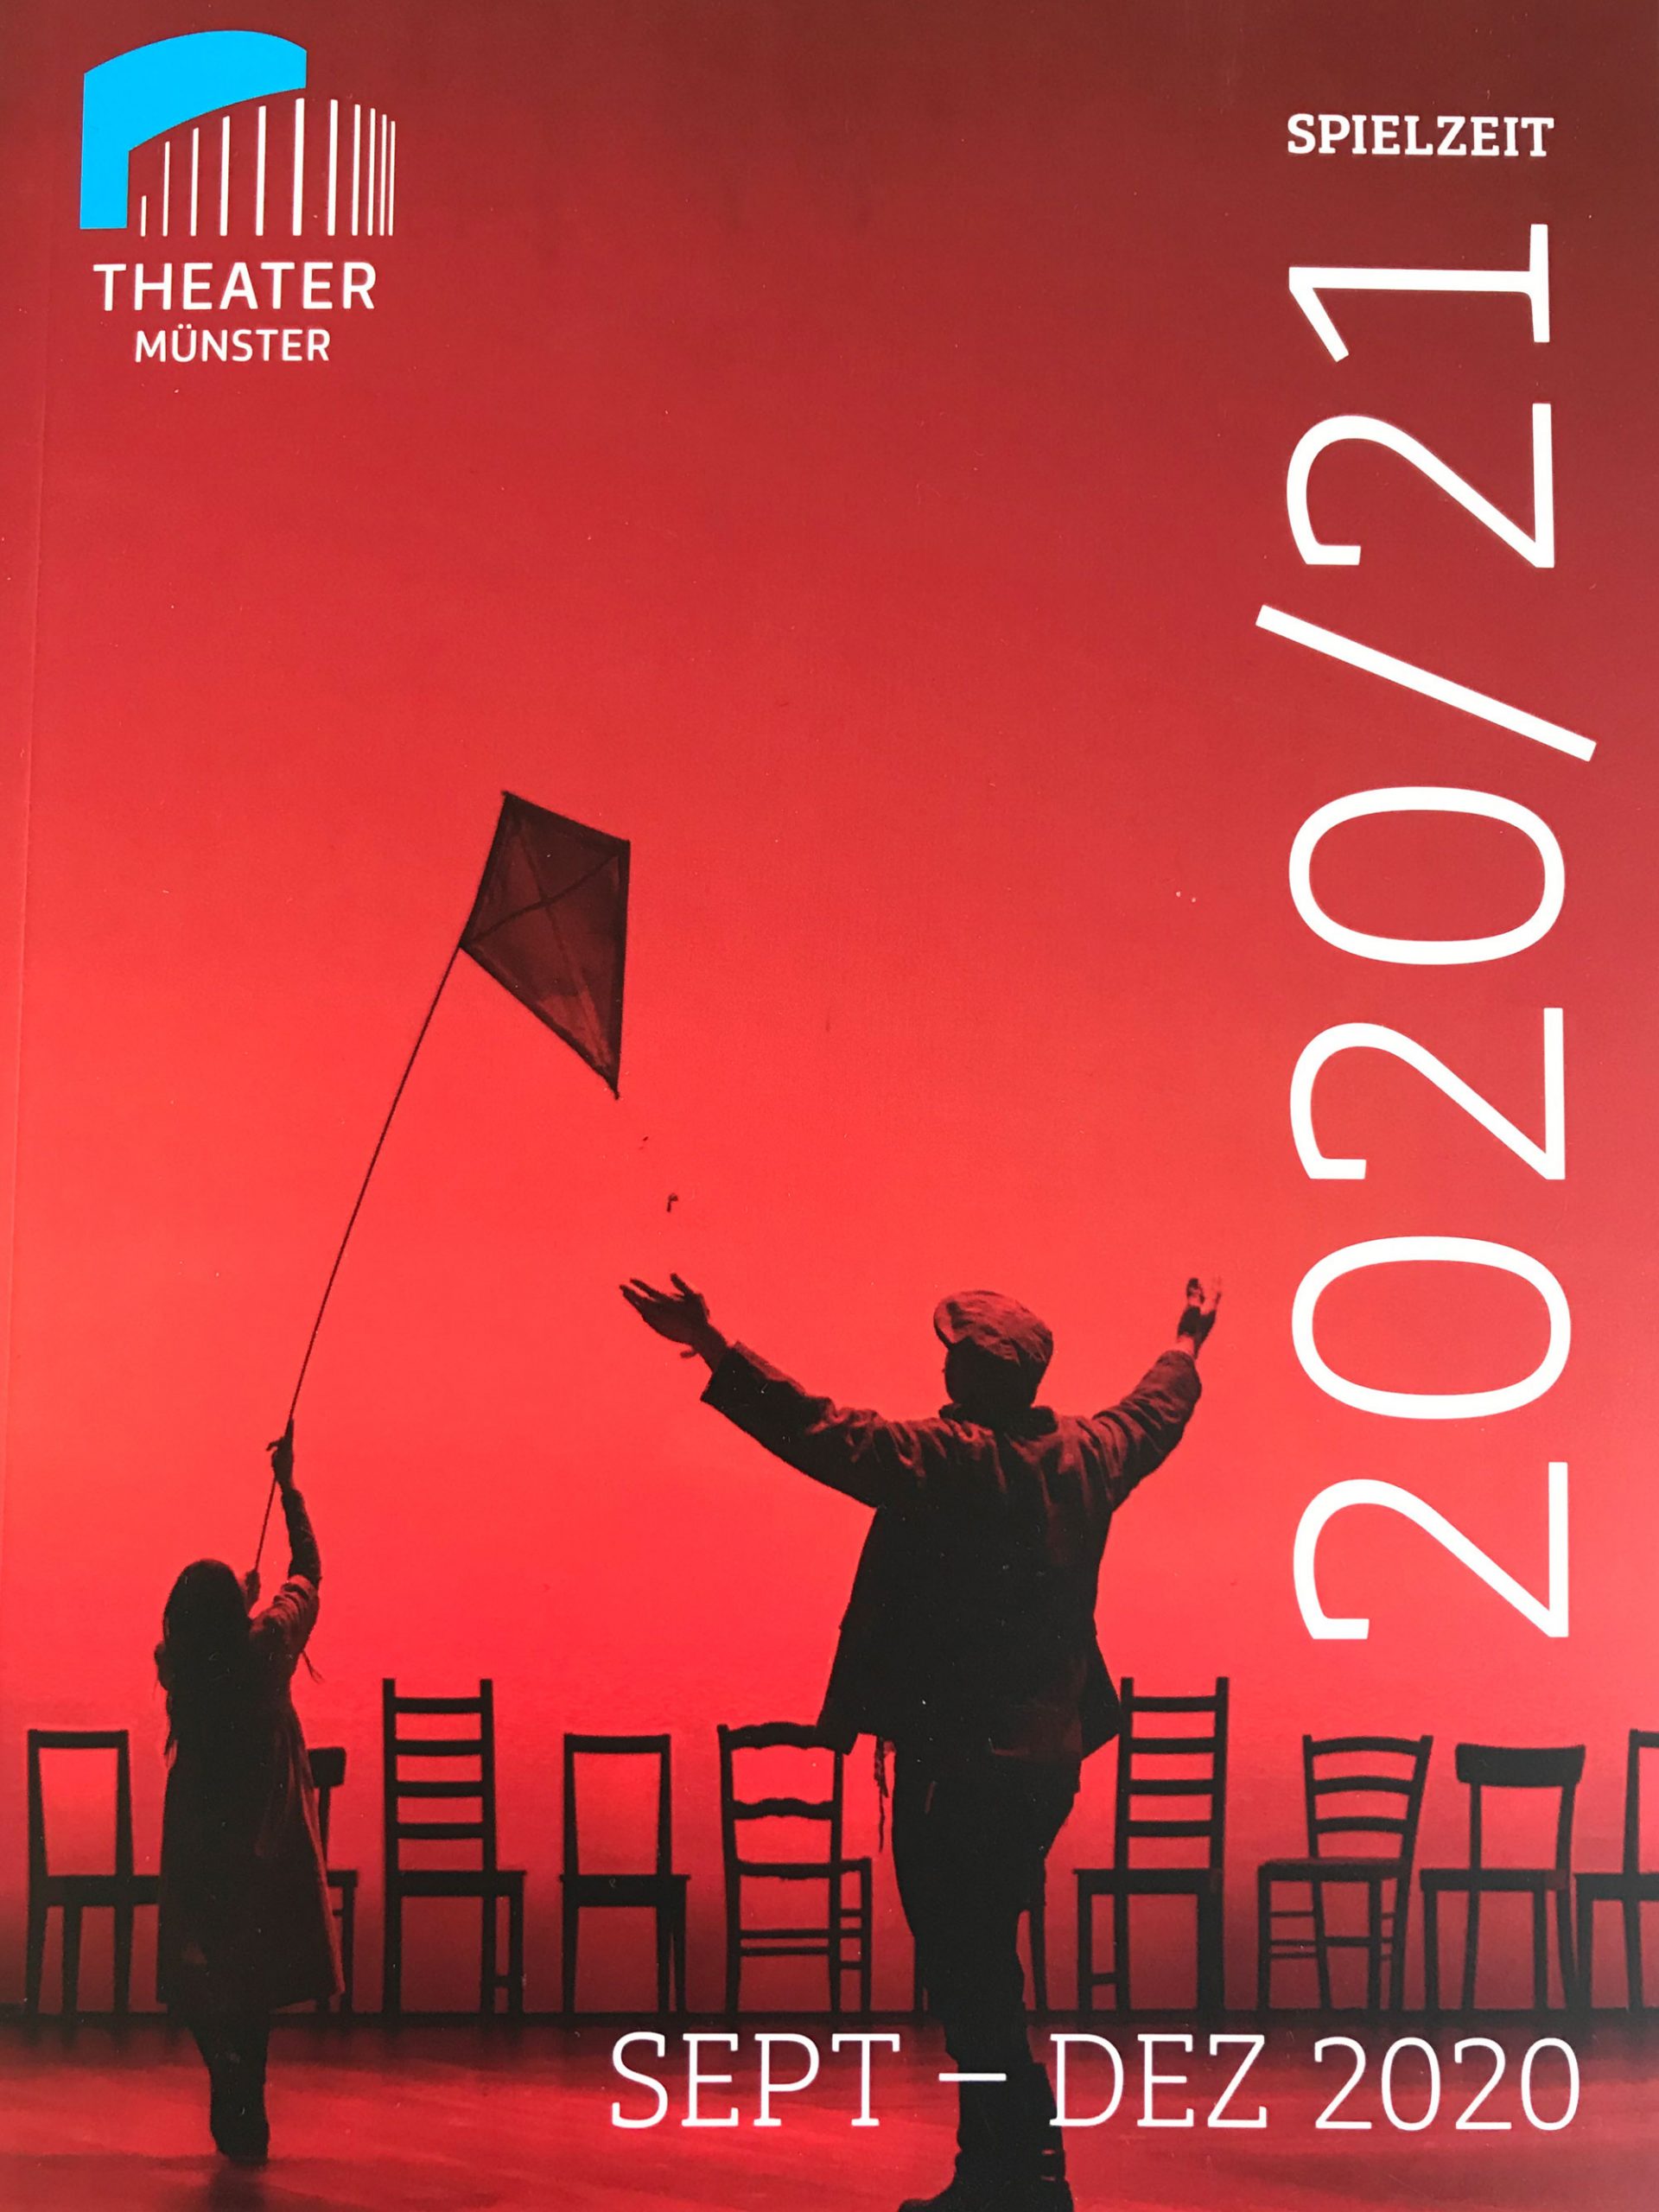 Titel des Spielzeitheftes des Theater Münster 2020/21